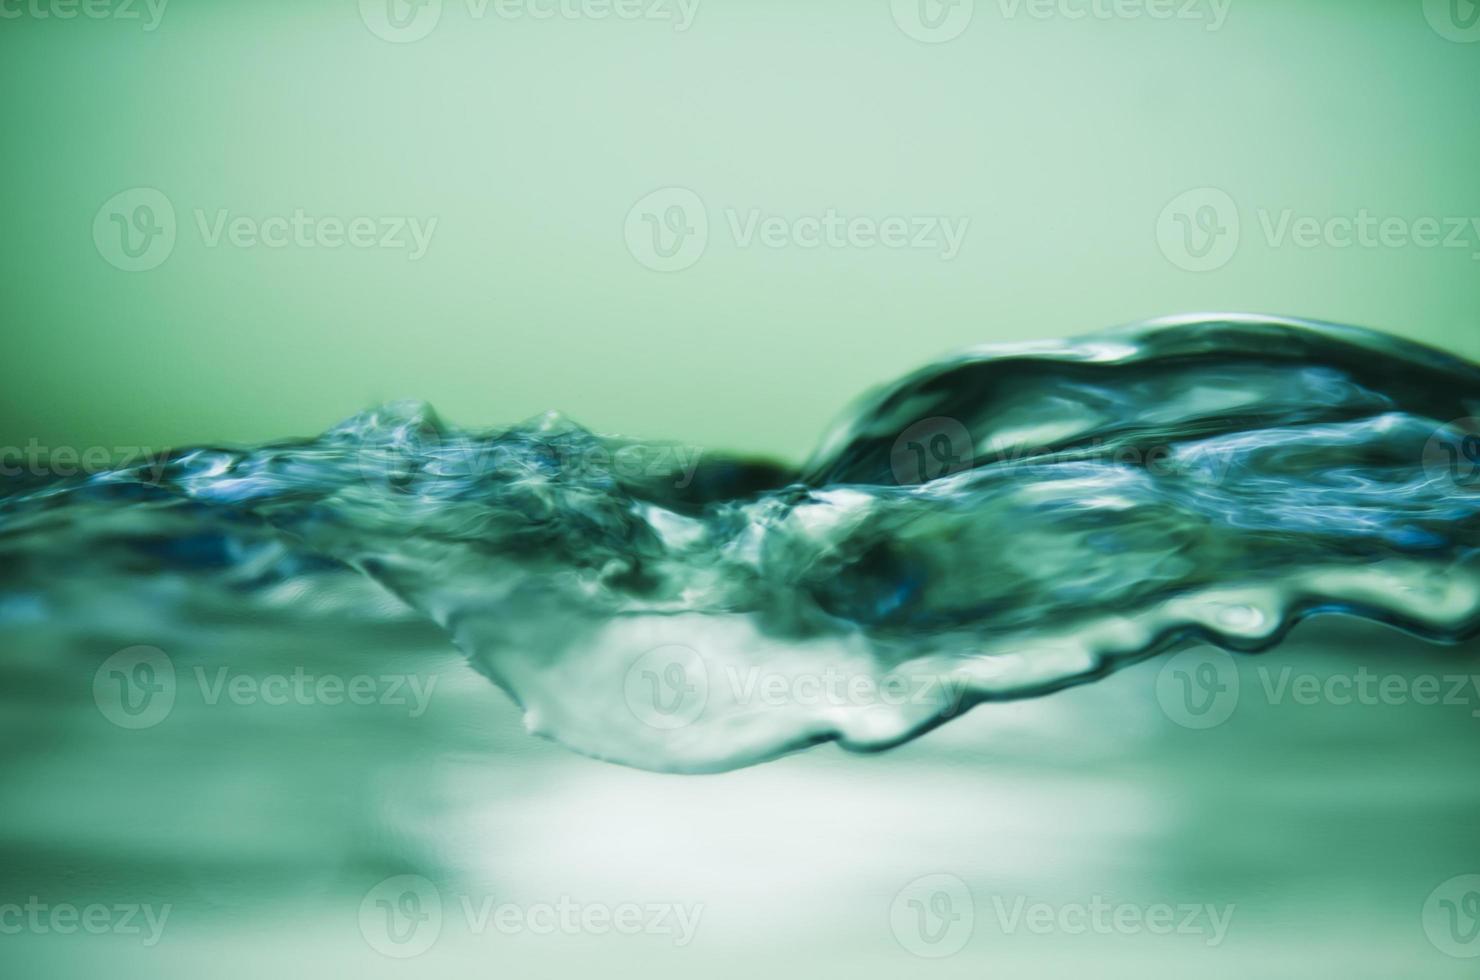 water bubbels foto